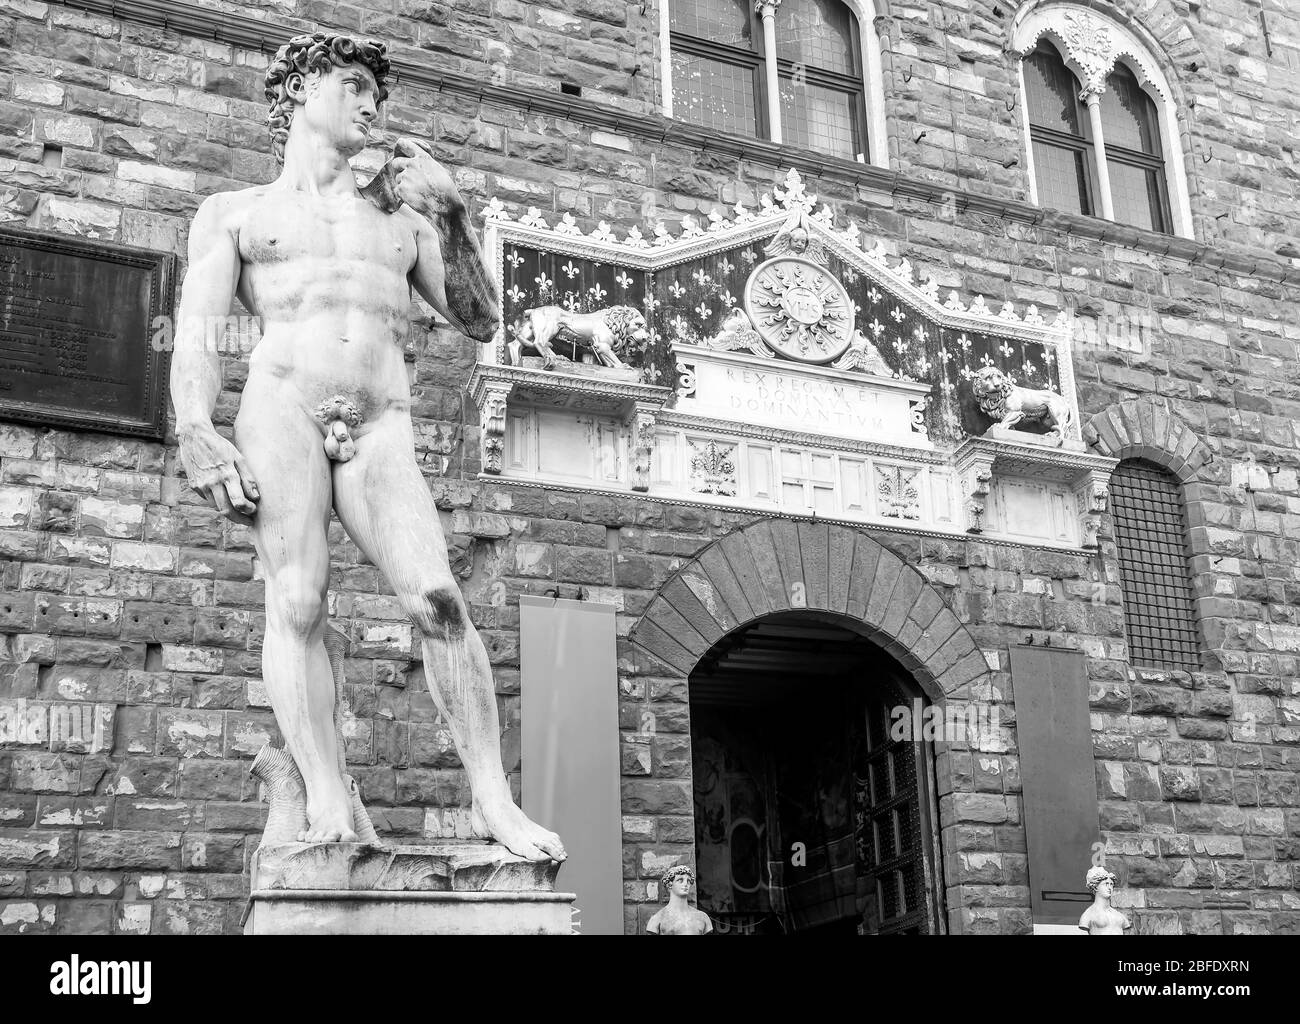 The replica of Michelangelo's David in Piazza della Signoria, historic center of Florence, Italy, in black and white Stock Photo